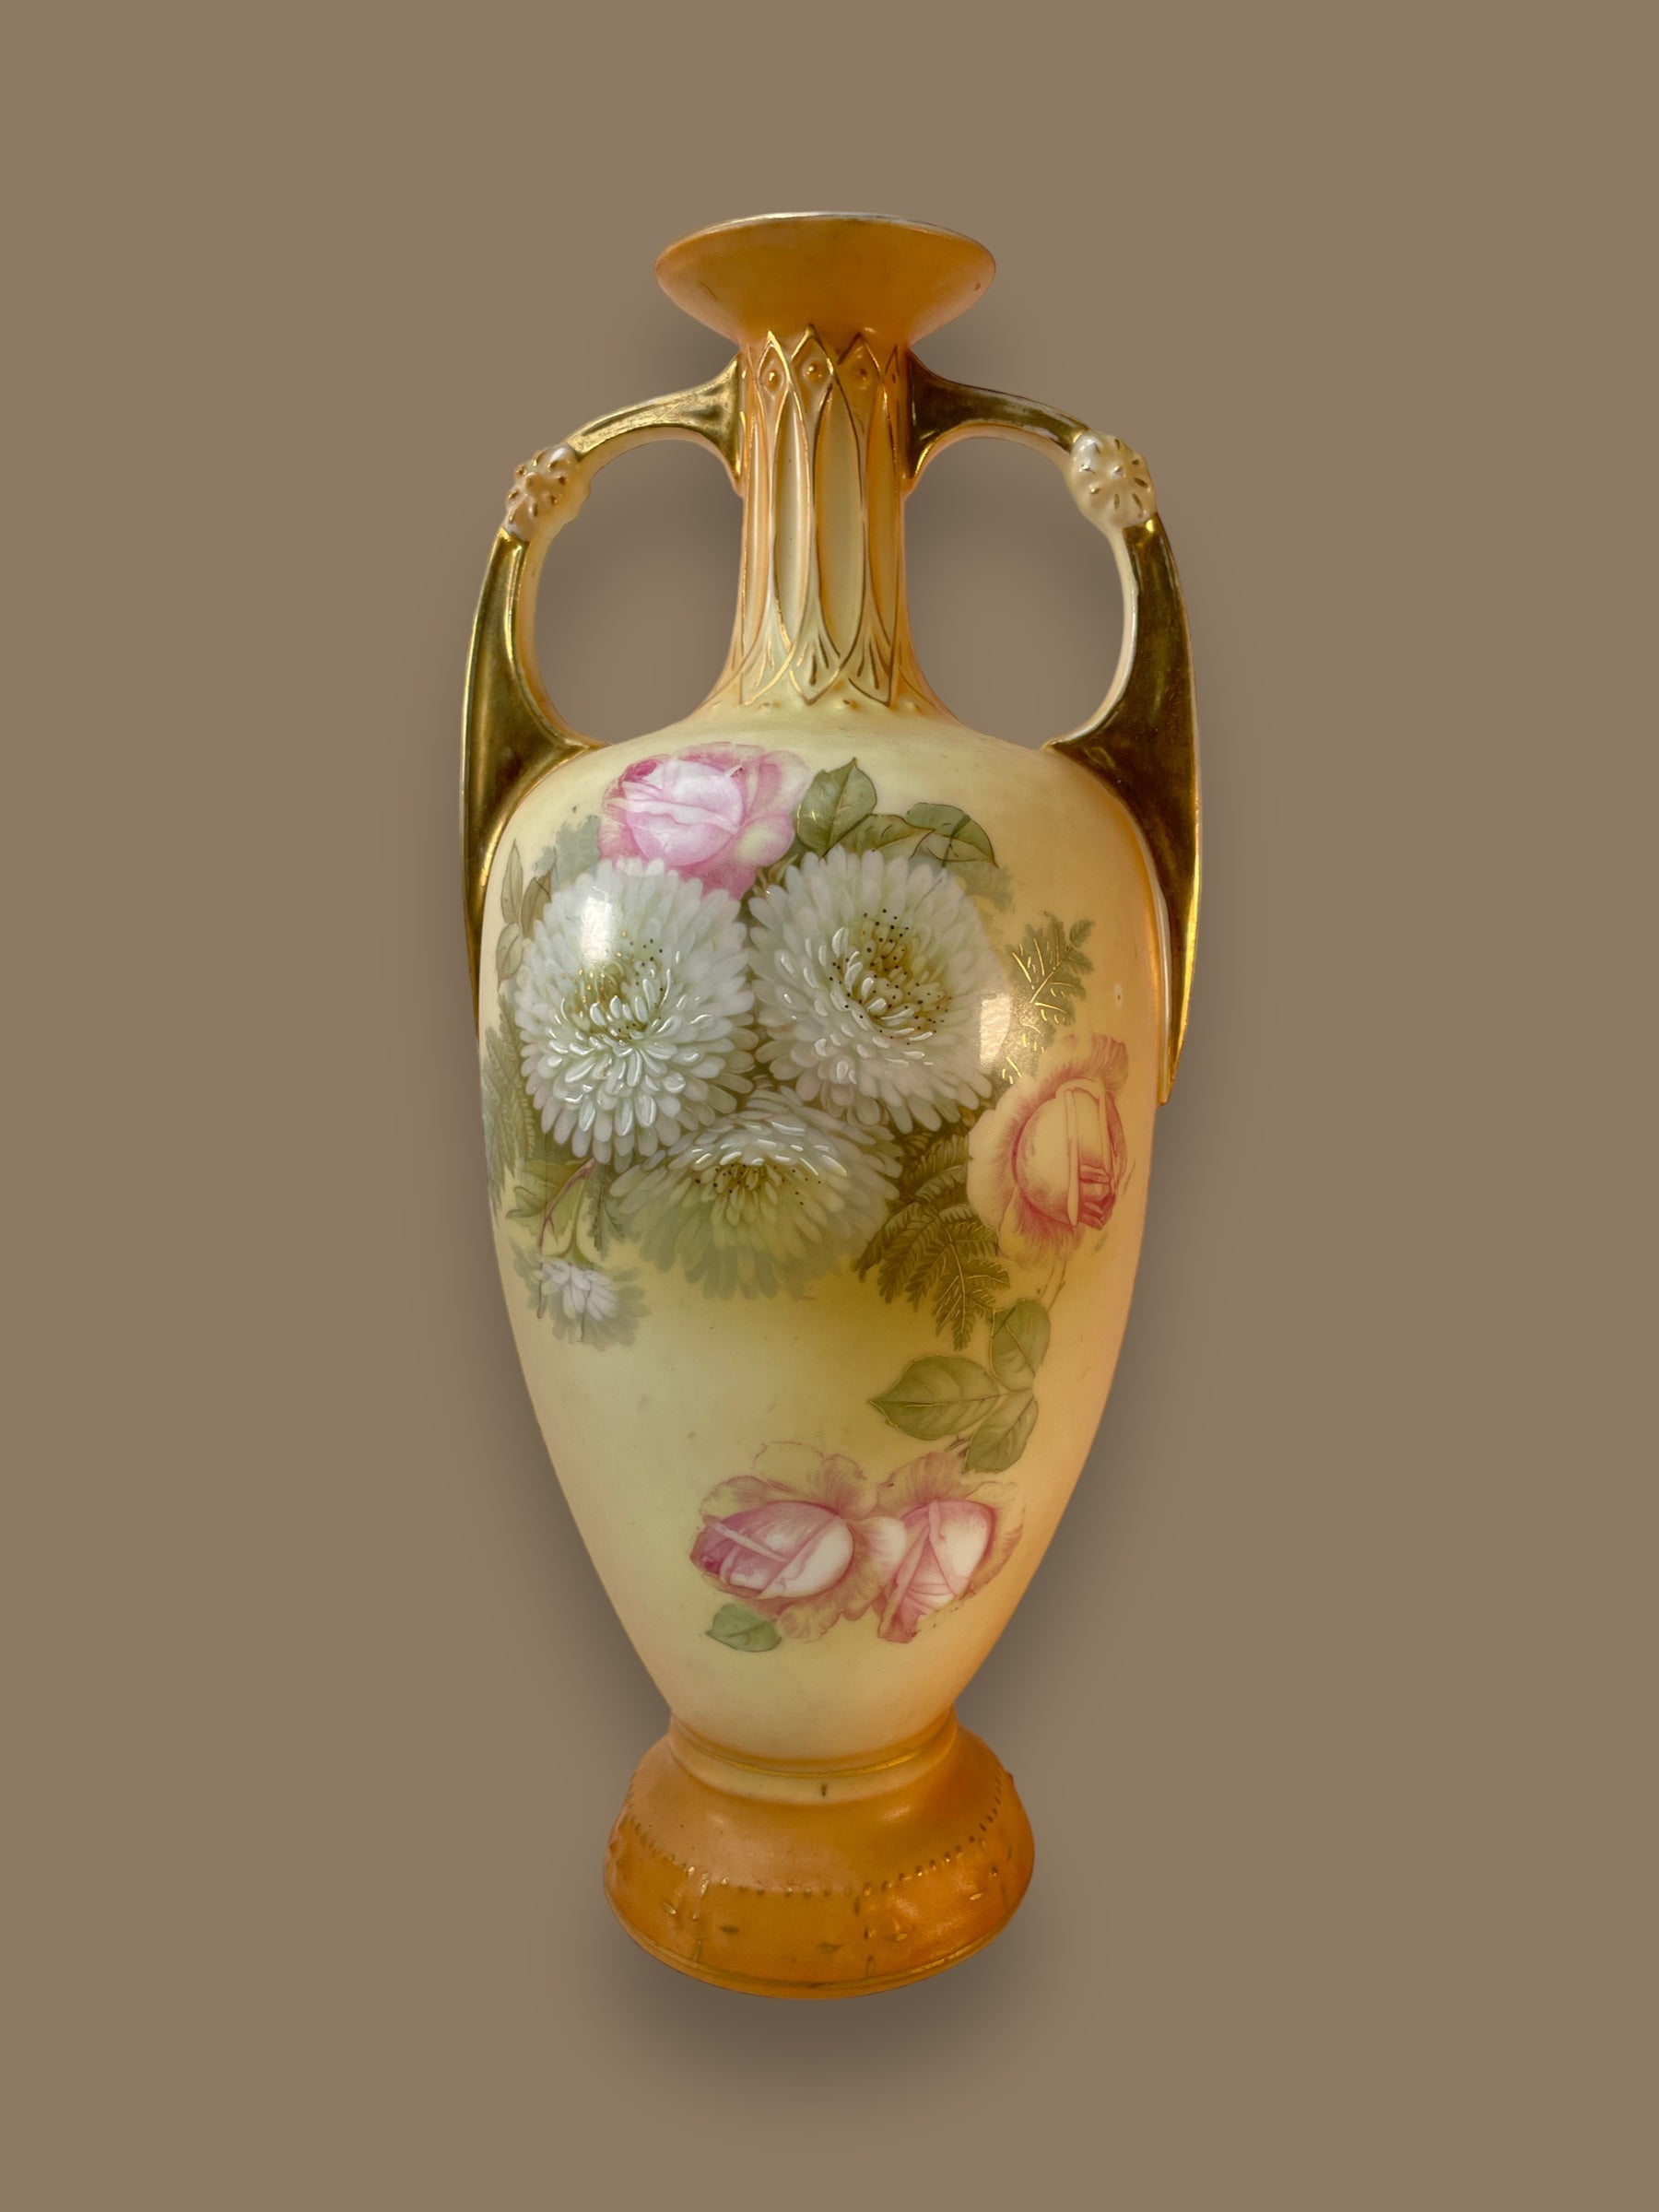 Vase agrémenté d'accents dorés et de peinture florale